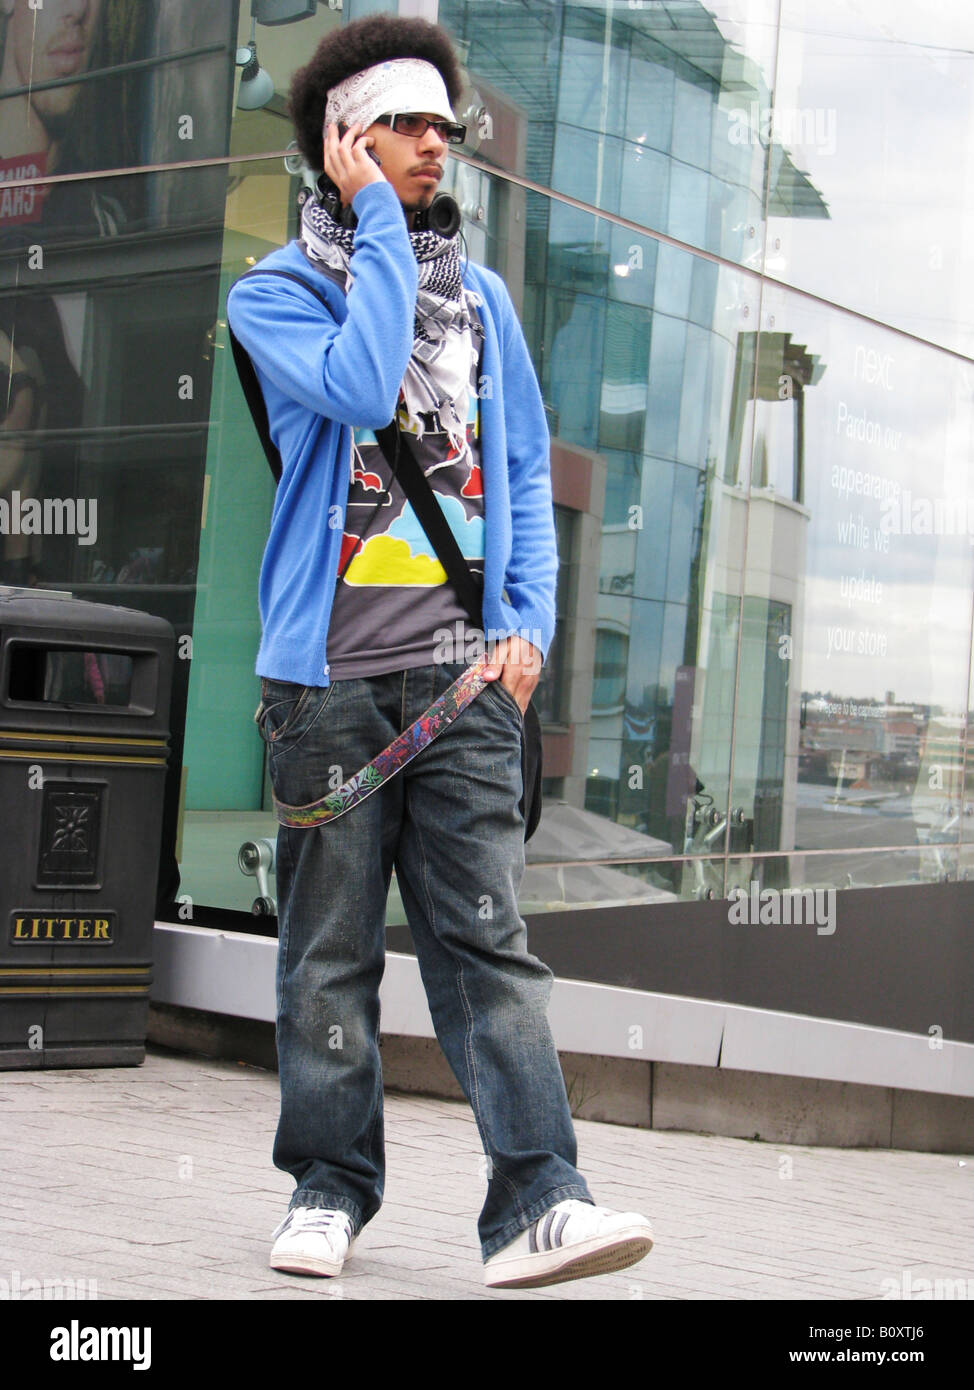 Junger Mensch mit Stirnband und hippe Kleidung spricht über sein Handy im  Zentrum Stadt, England, Birmingham Stockfotografie - Alamy